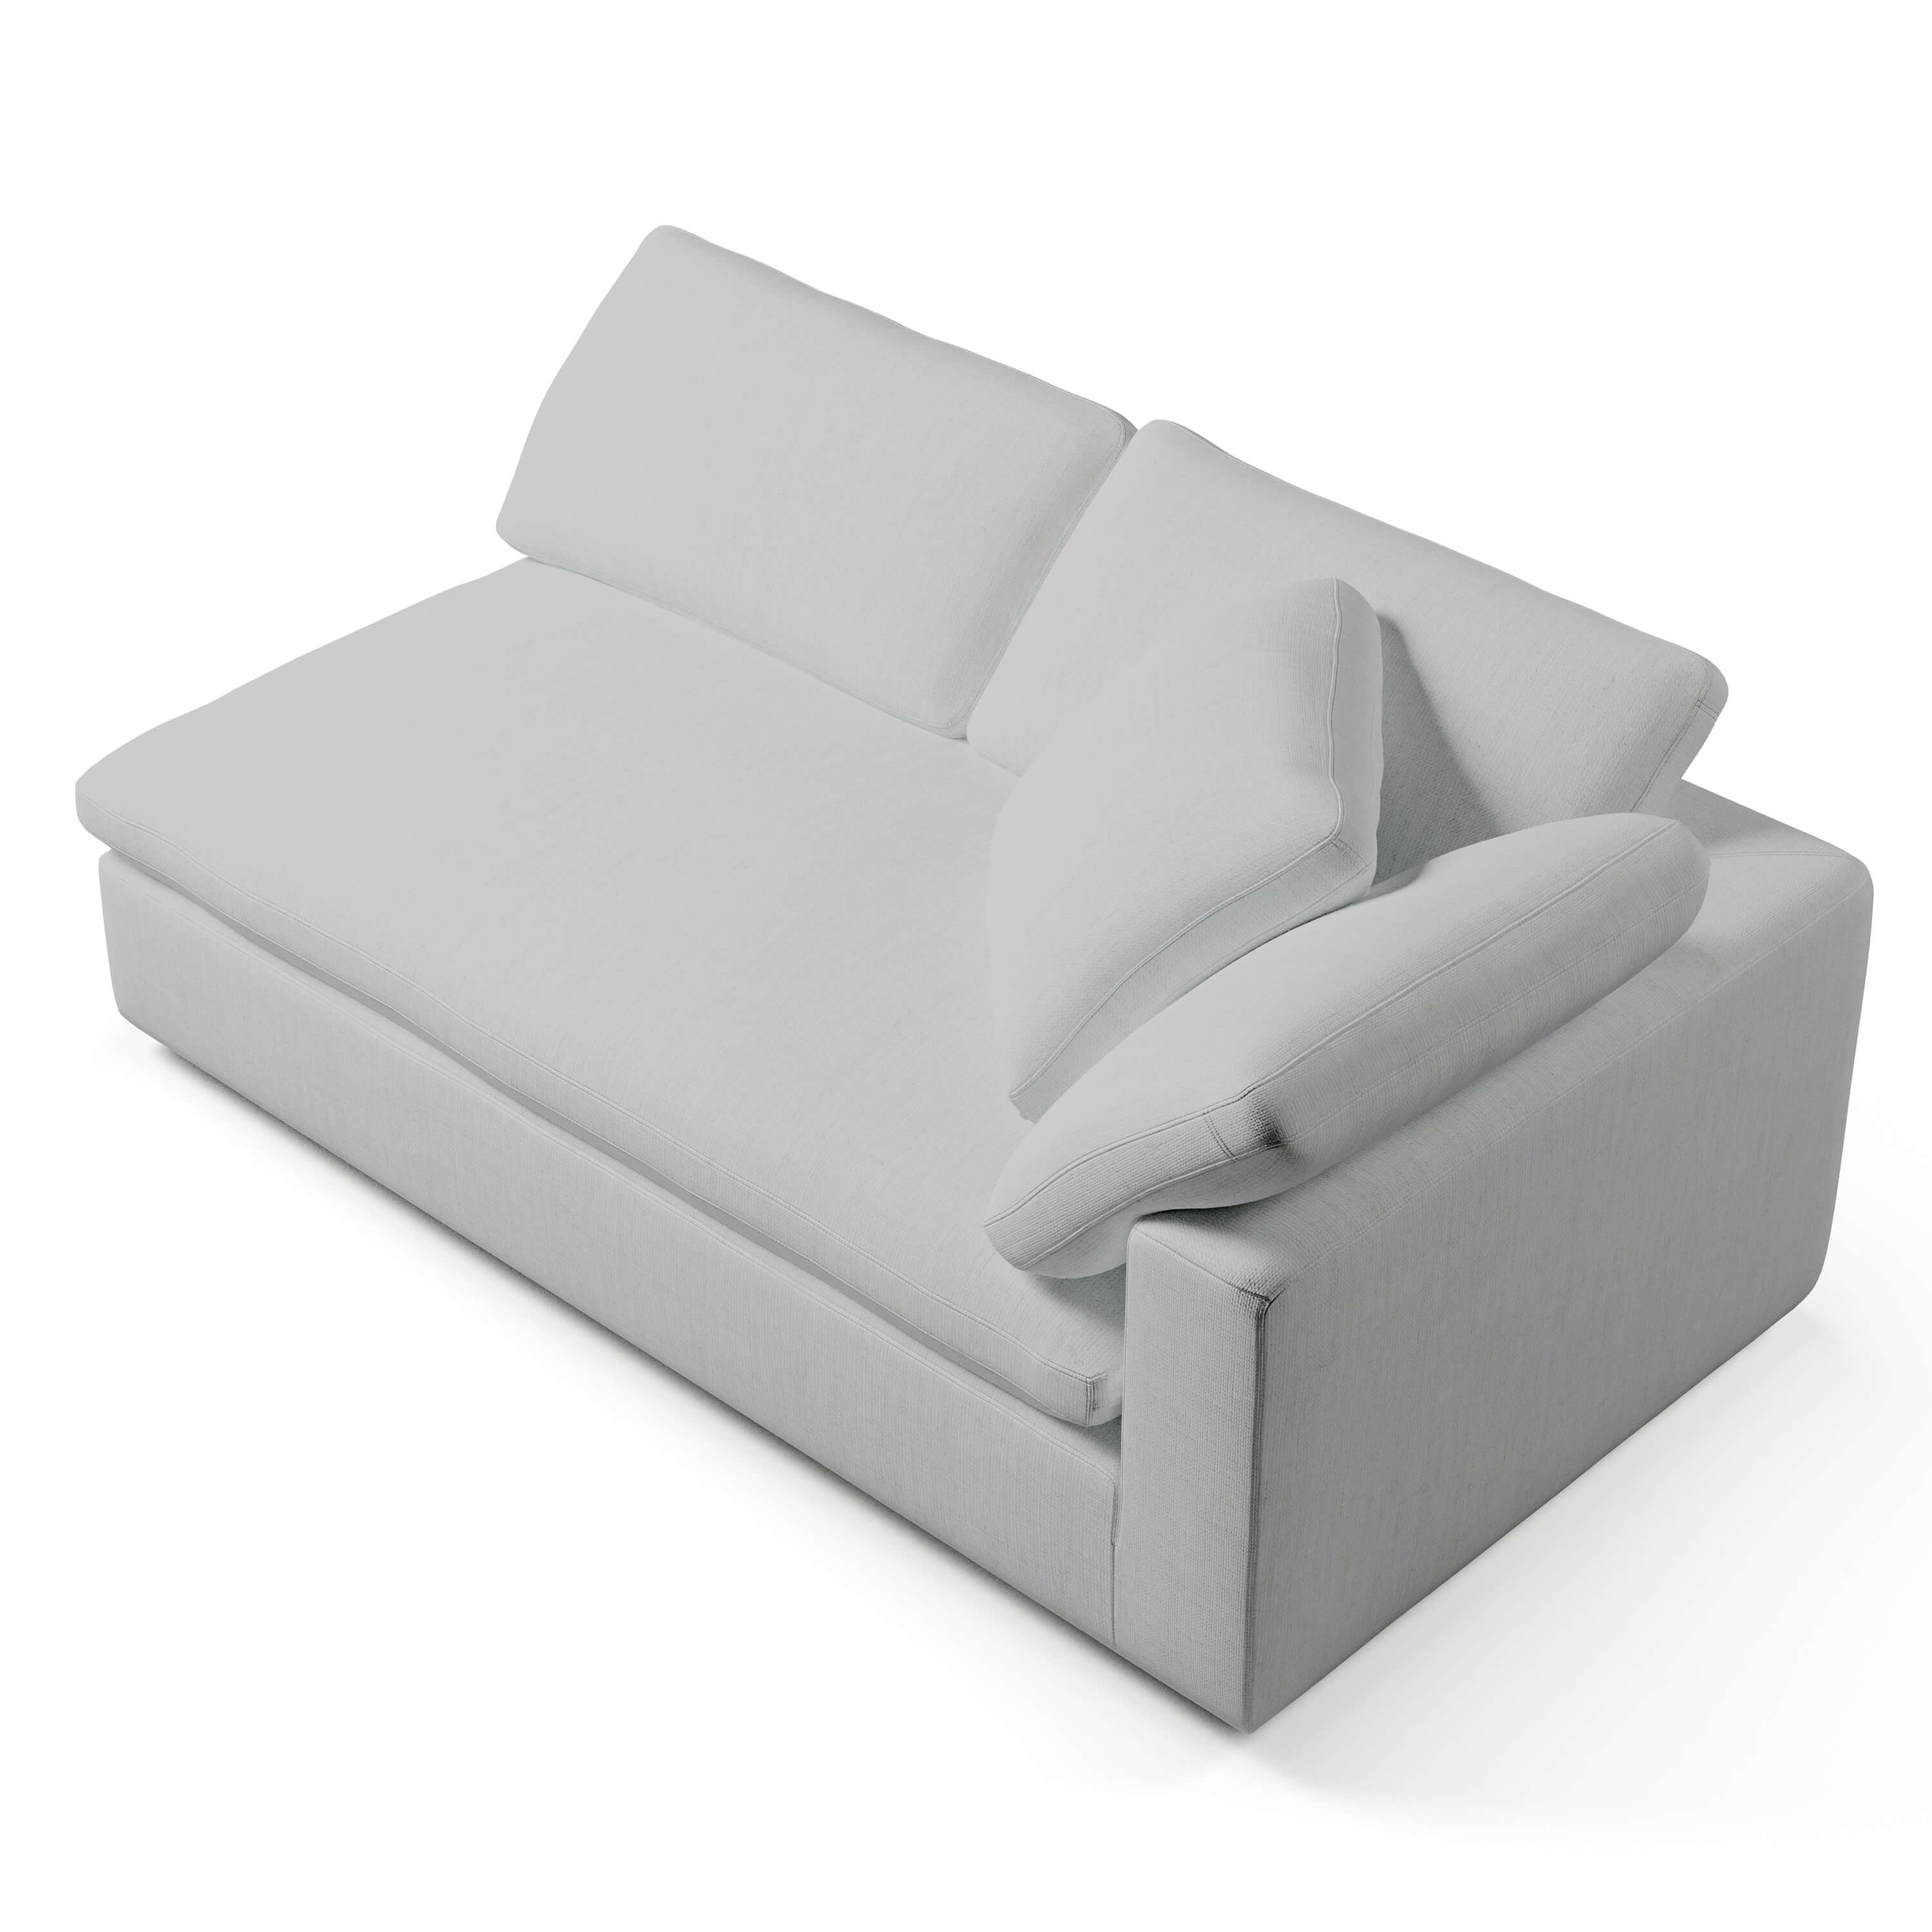 Comfy Sofa - Right-Arm